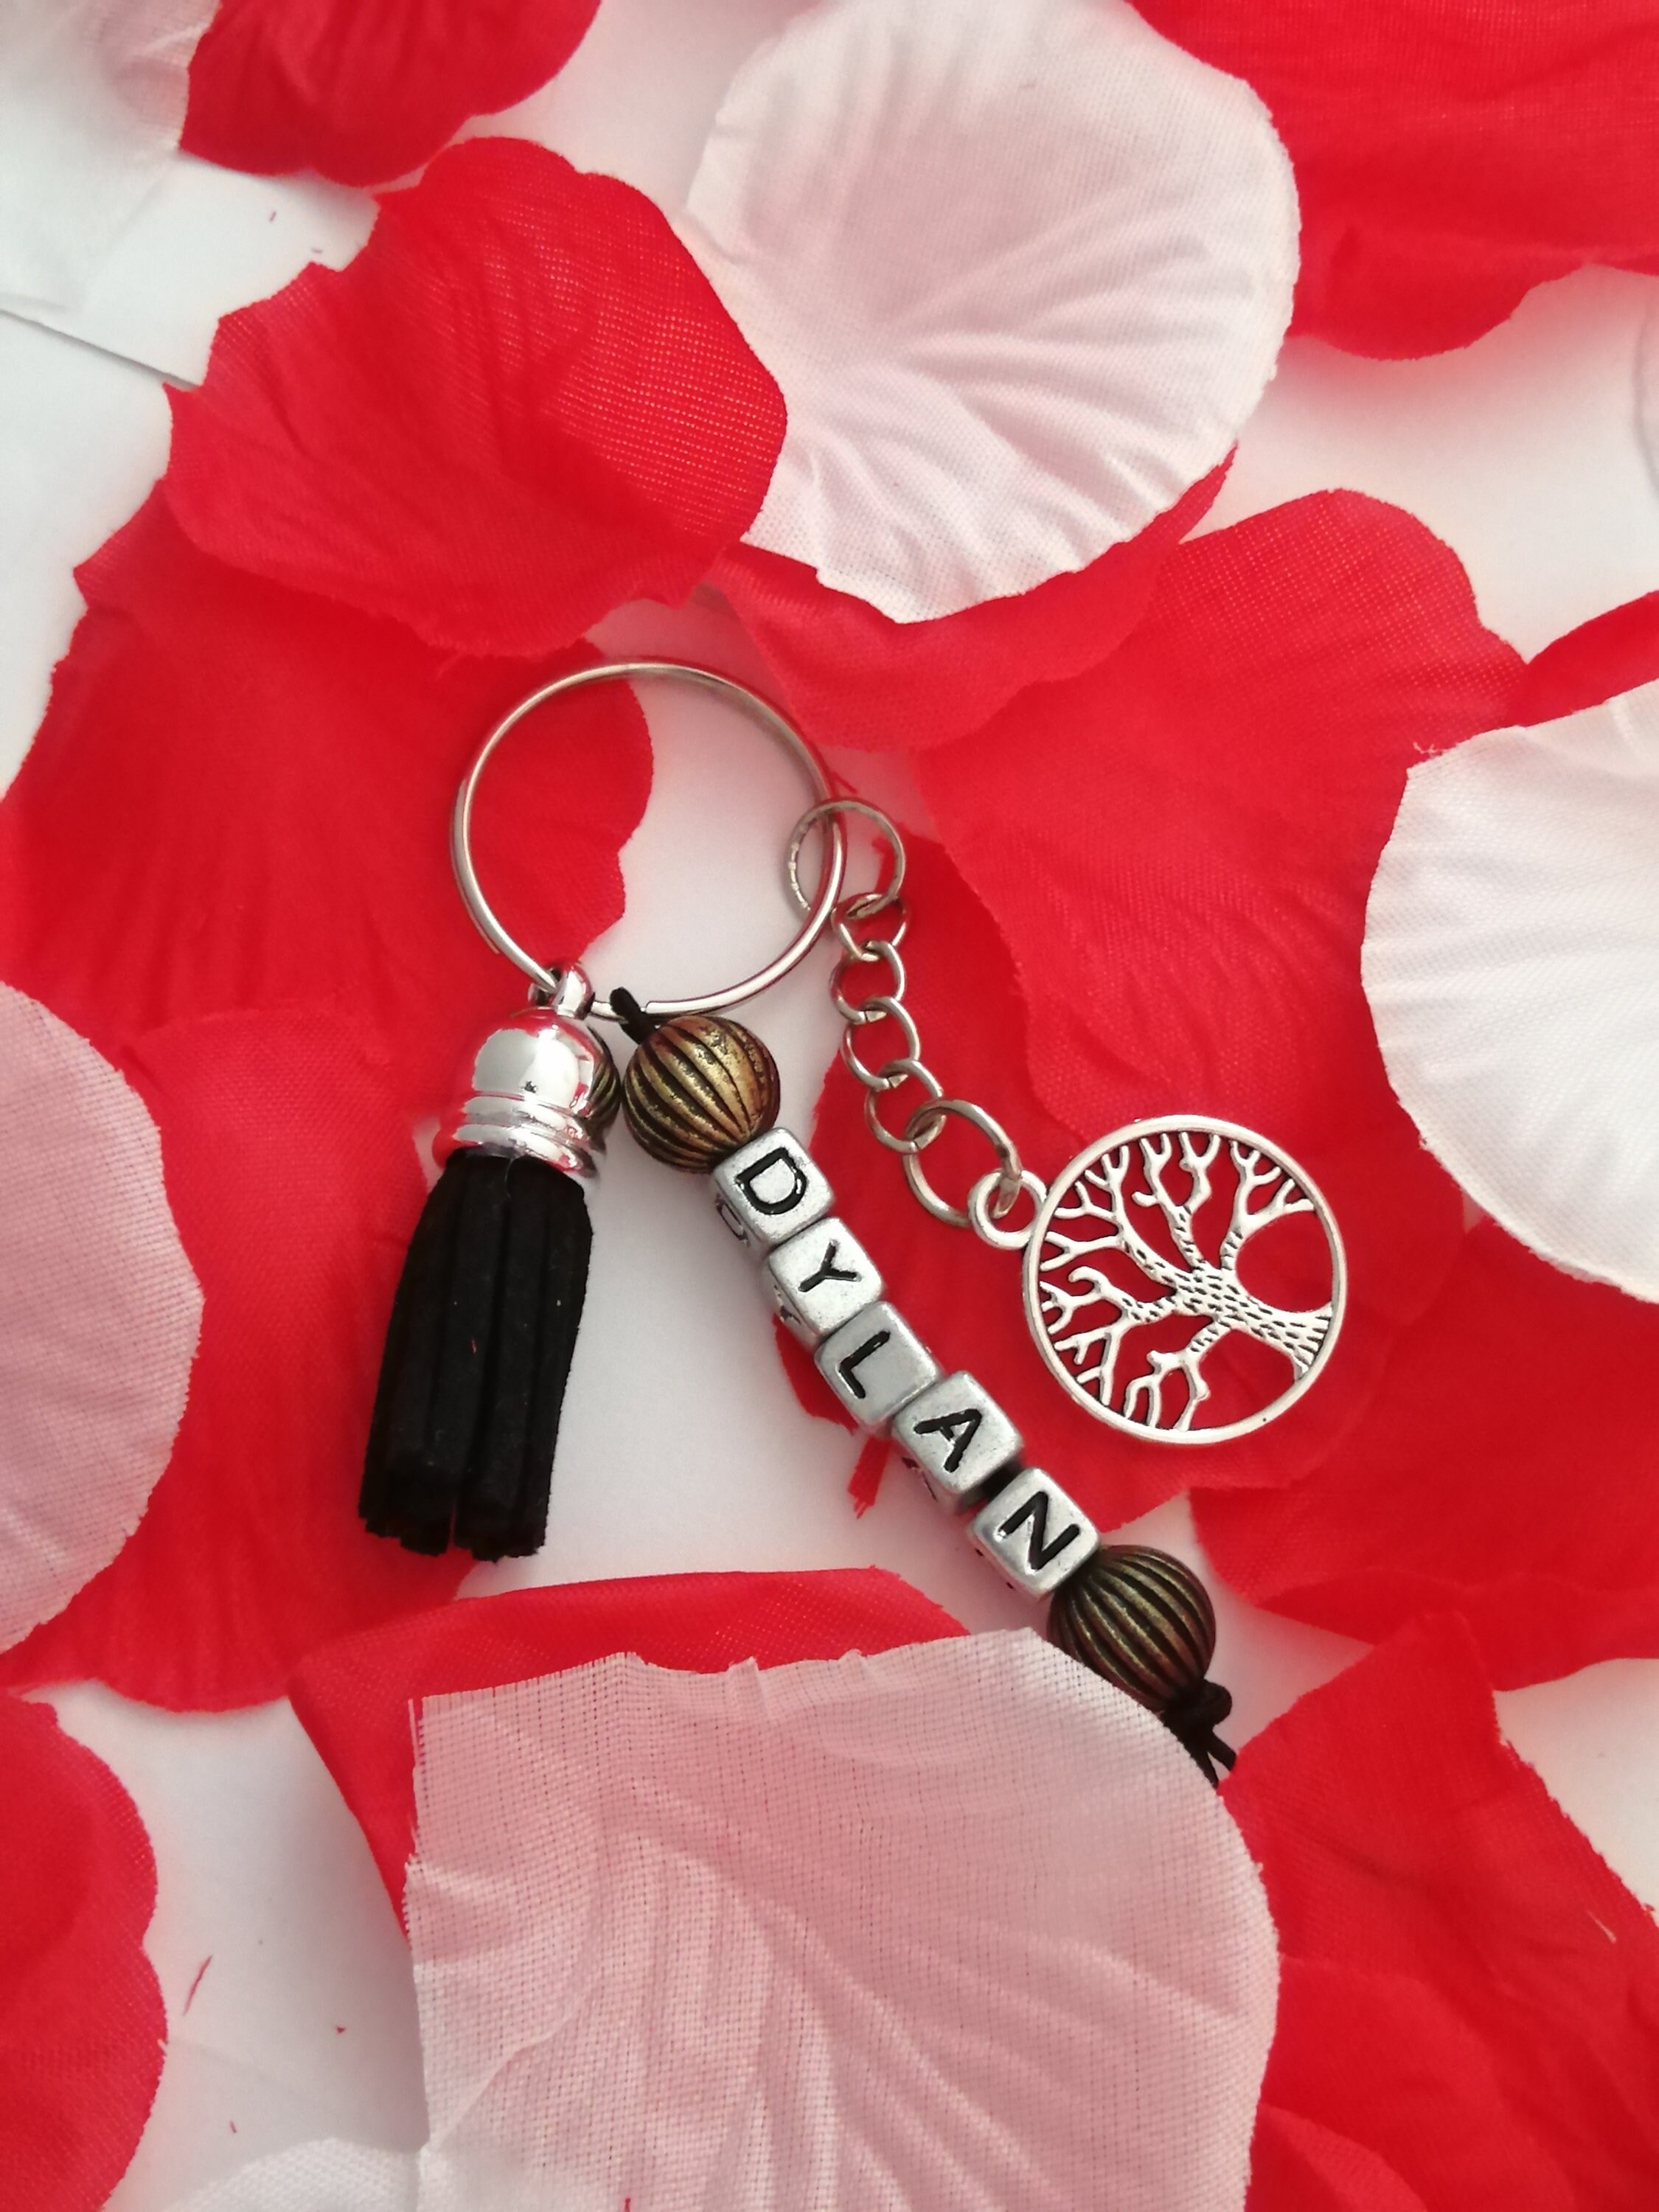 Idéal pour Saint Valentin Porte-clés jolie petite clef de son cœur 30 mm Lg 